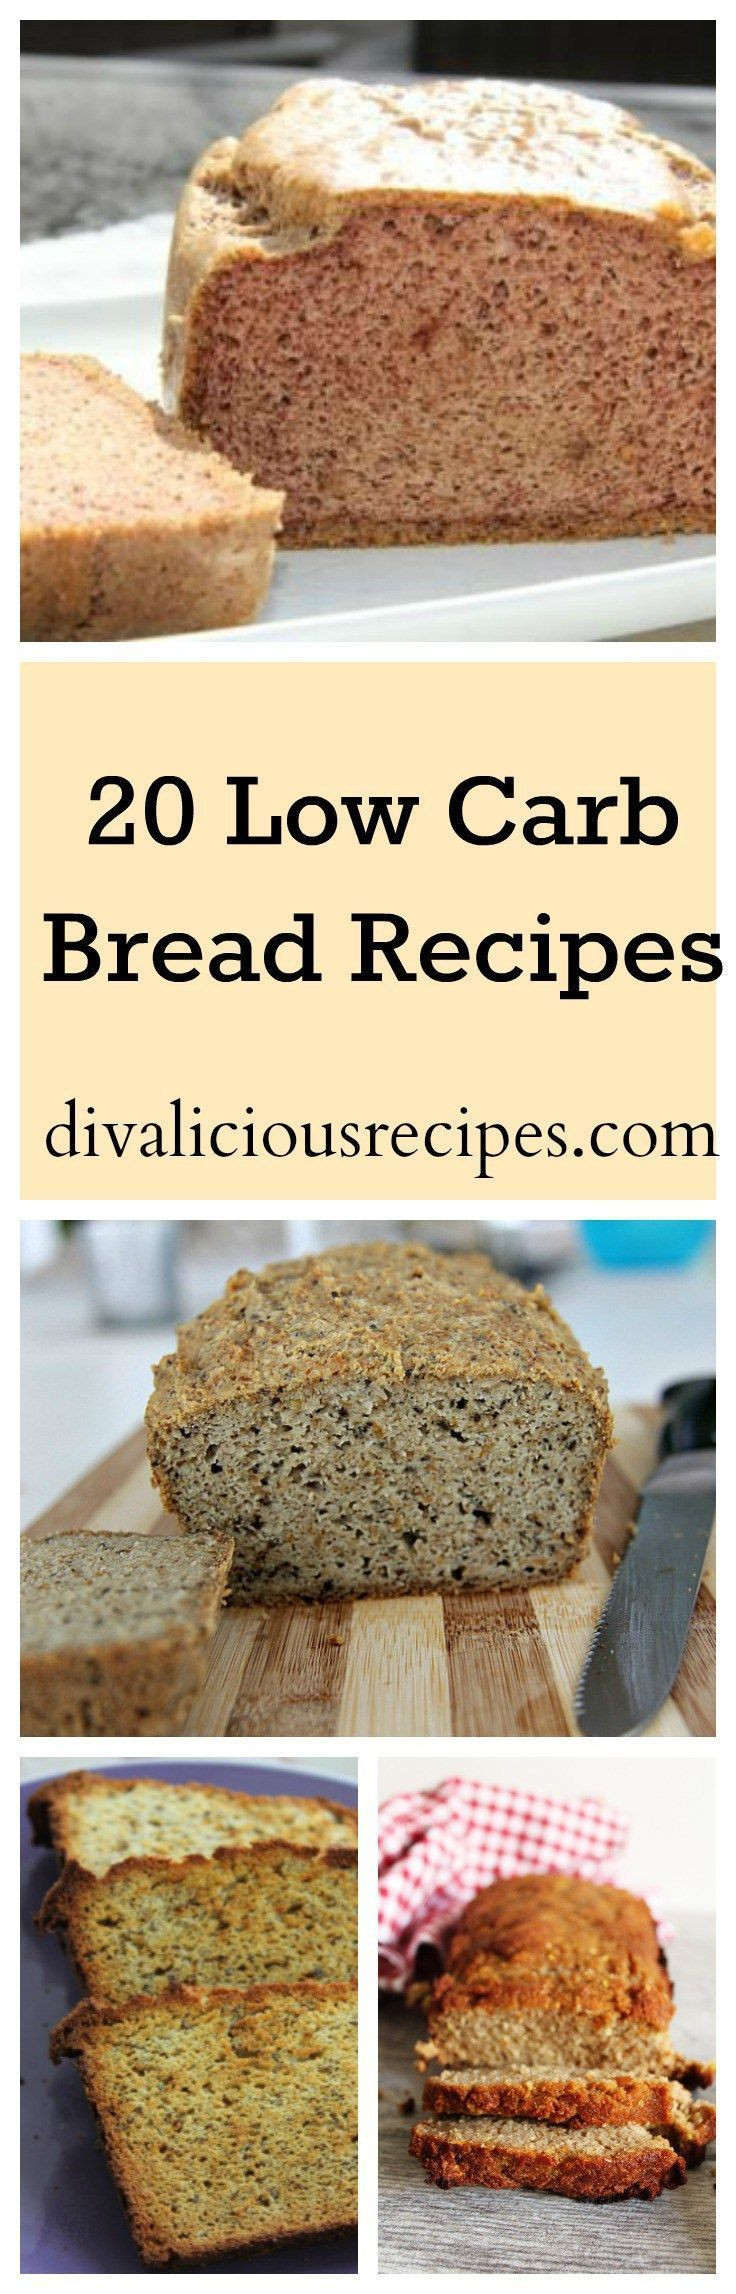 Healthy Low Carb Bread Recipes
 20 Low Carb Bread Recipes